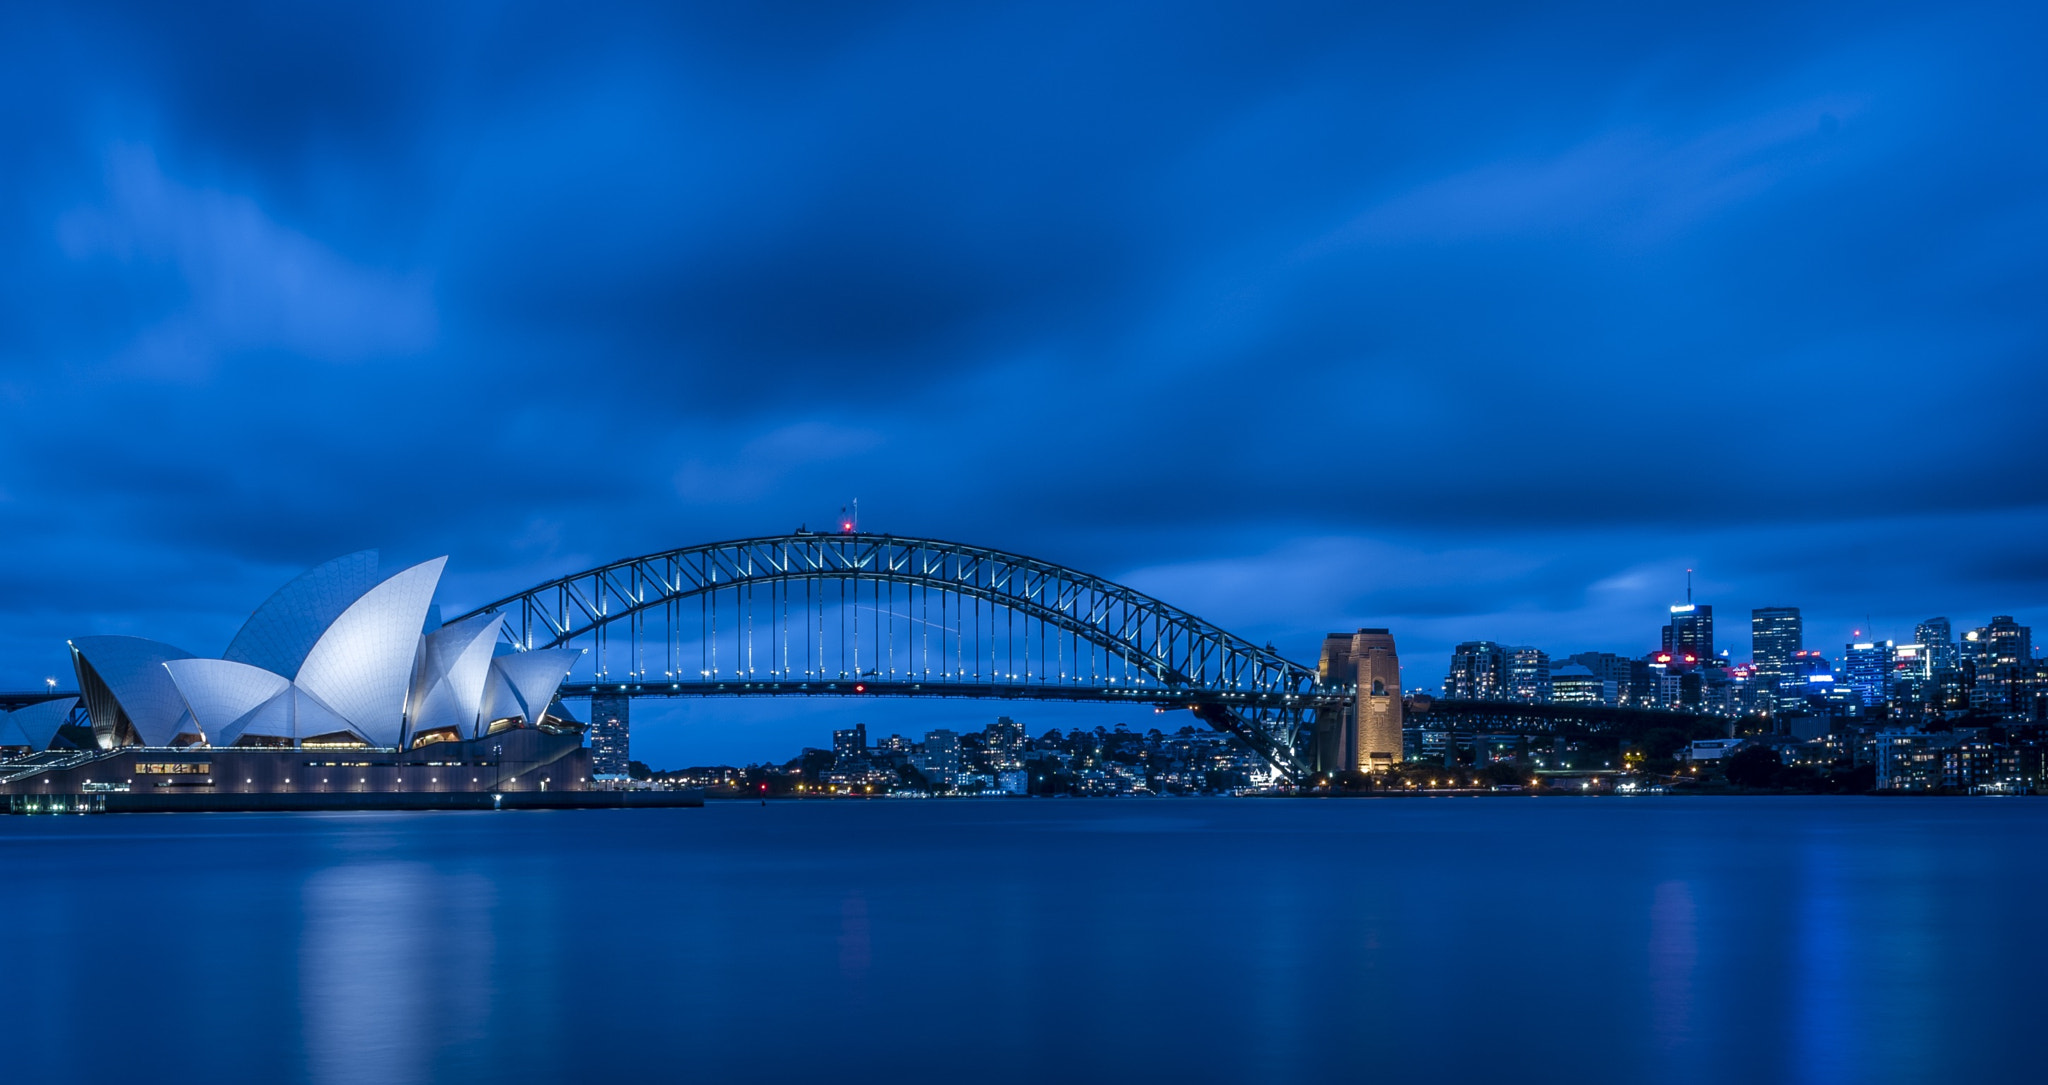 Nikon D810 + Nikon AF-S DX Nikkor 18-140mm F3.5-5.6G ED VR sample photo. Sydney harbour bridge and opera house photography